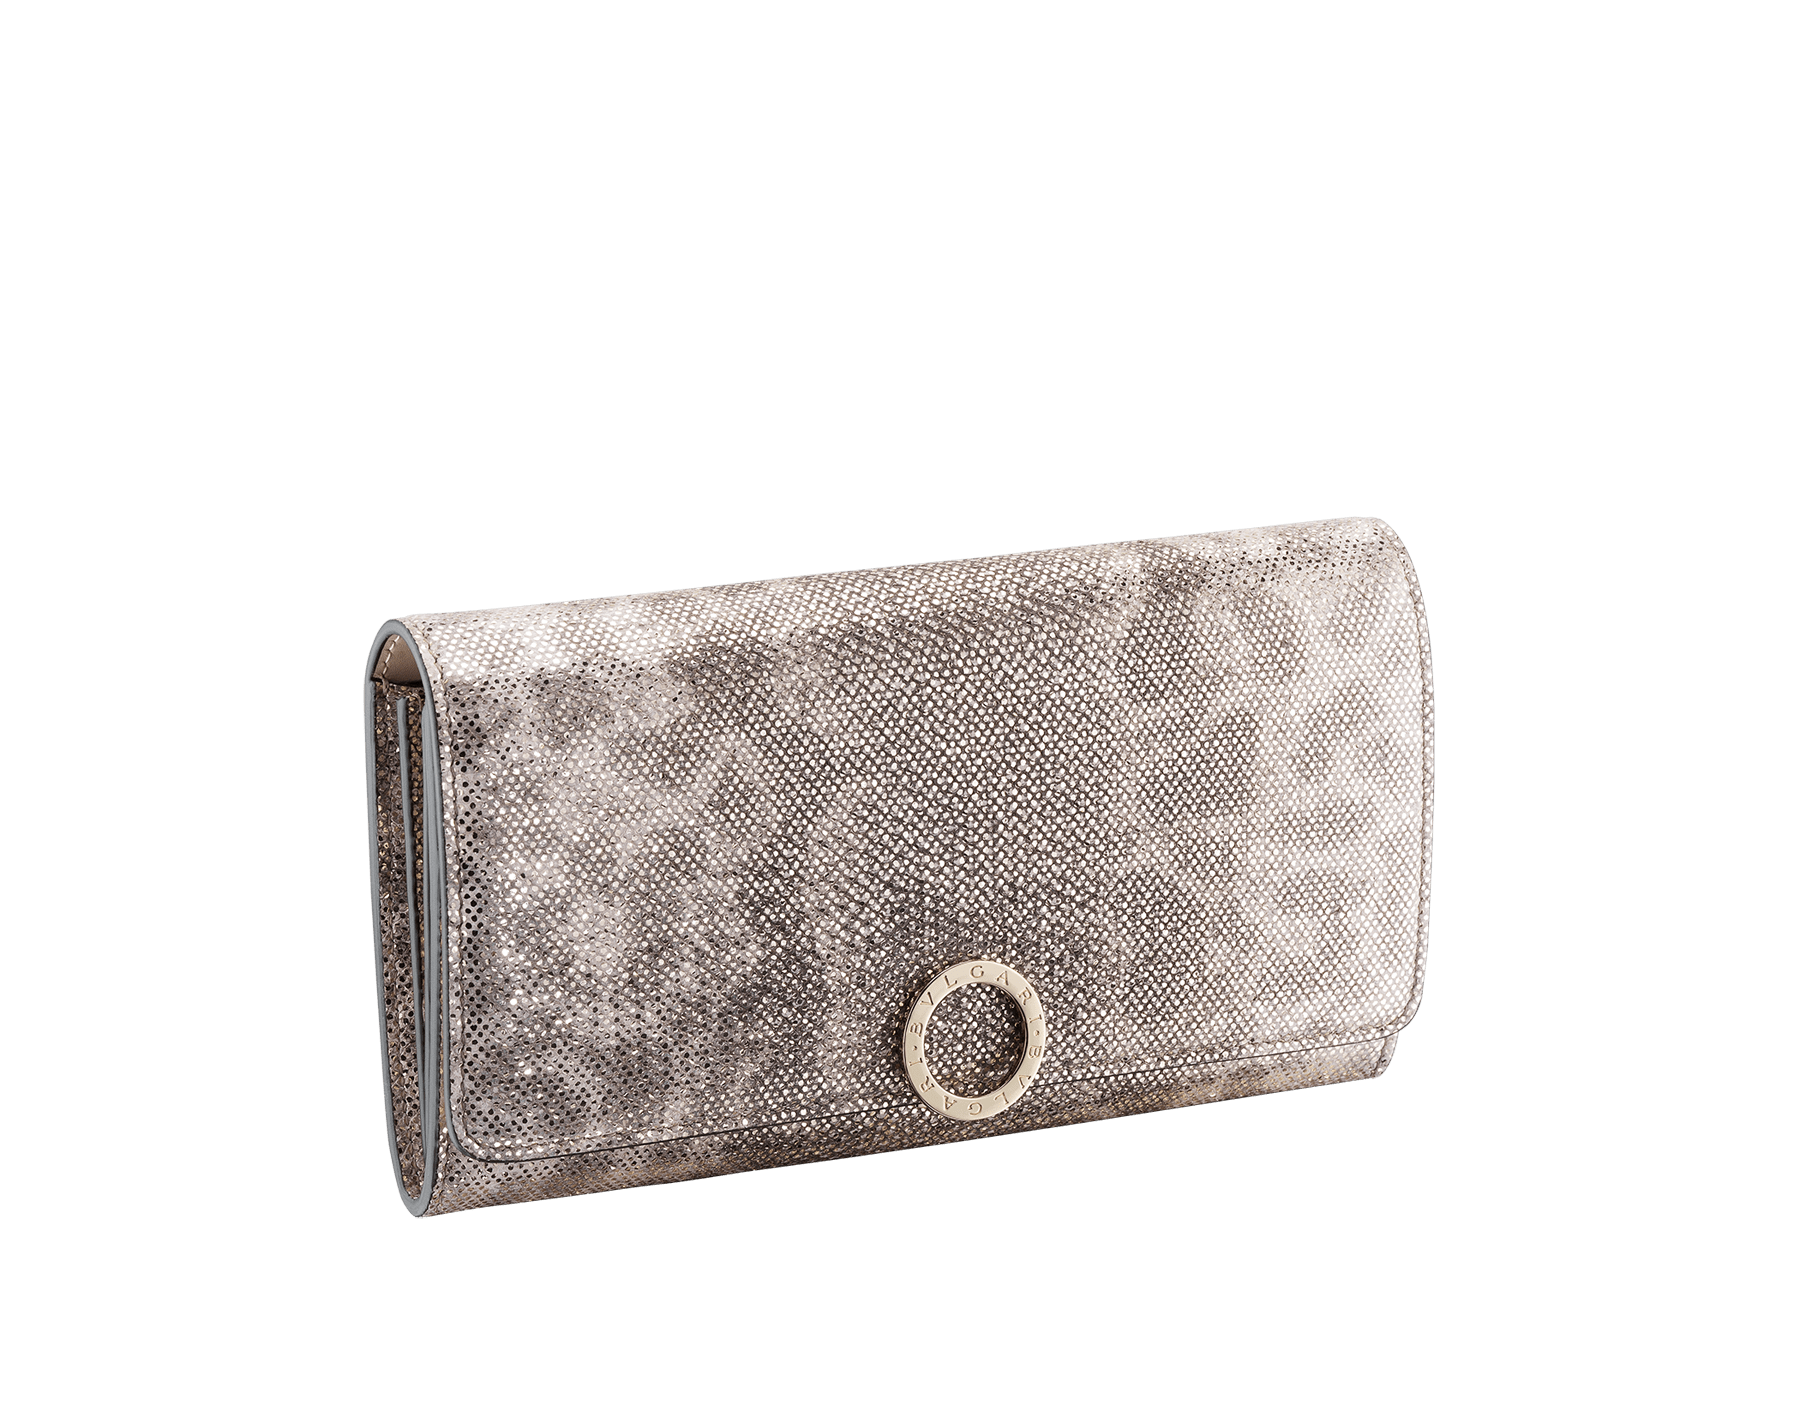 50代女性に人気の財布はBVLGARIのミルキーオパールです